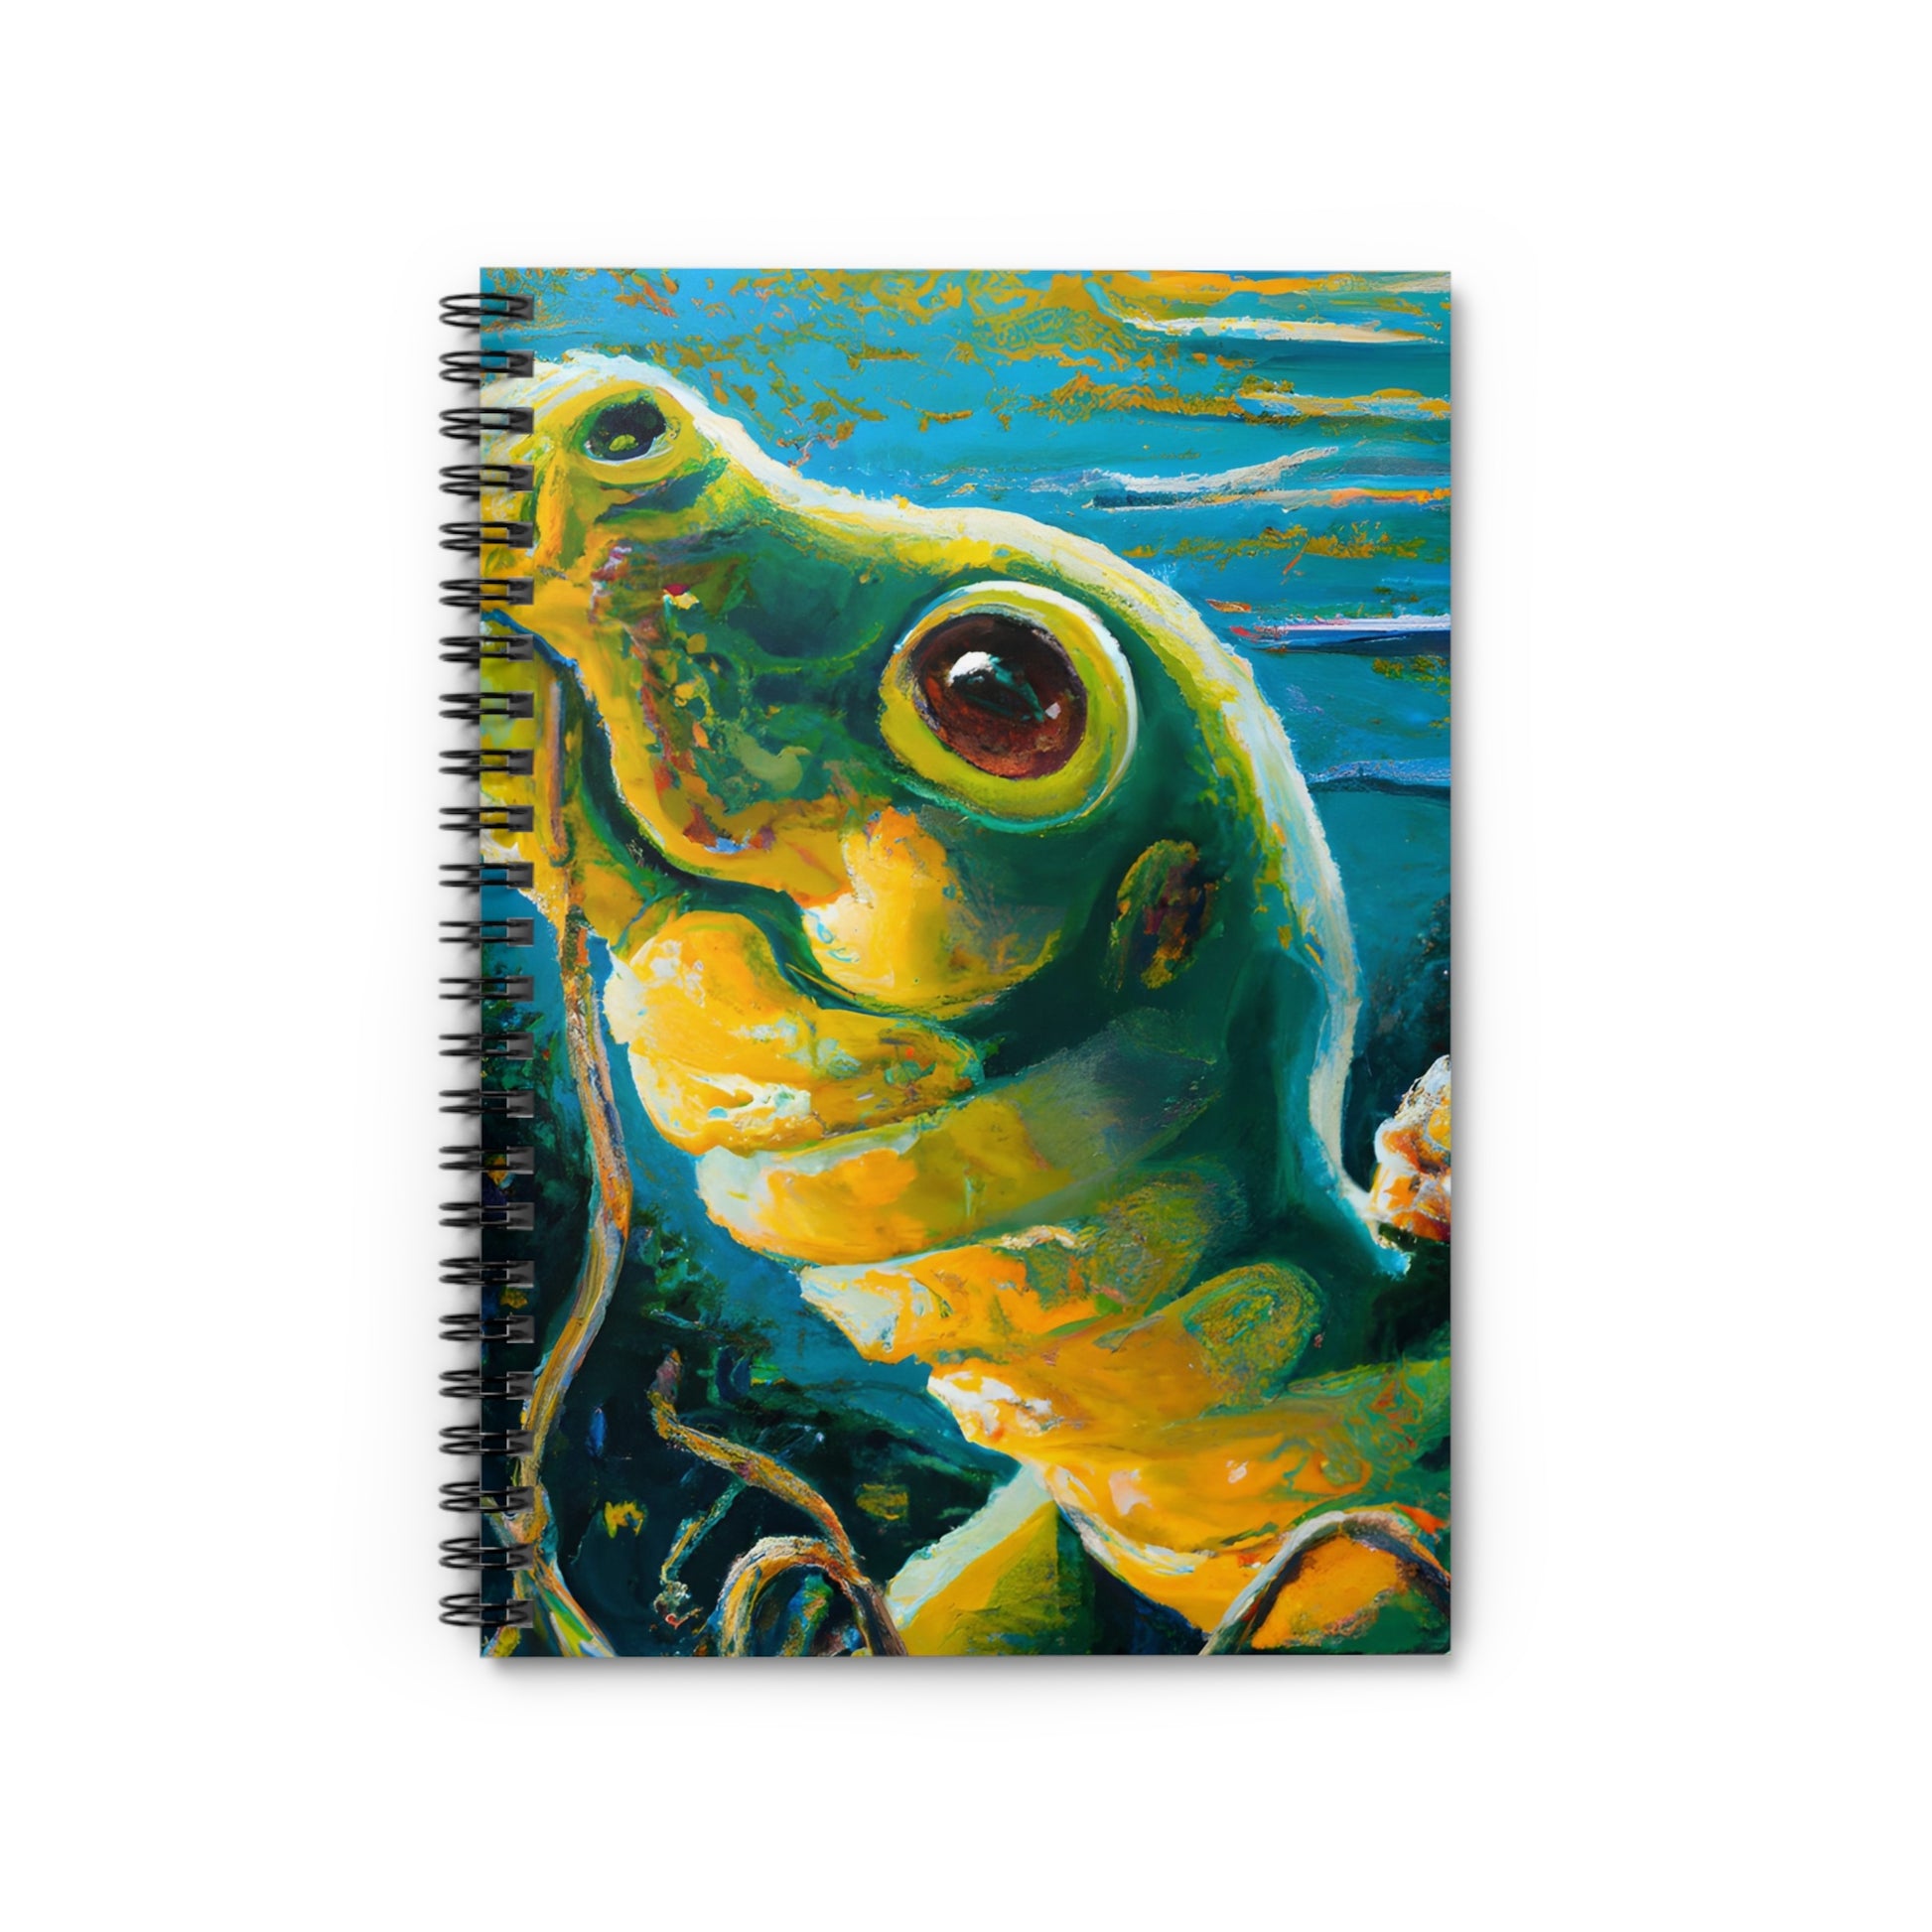 ArtyAnimals16 Notebook Journal